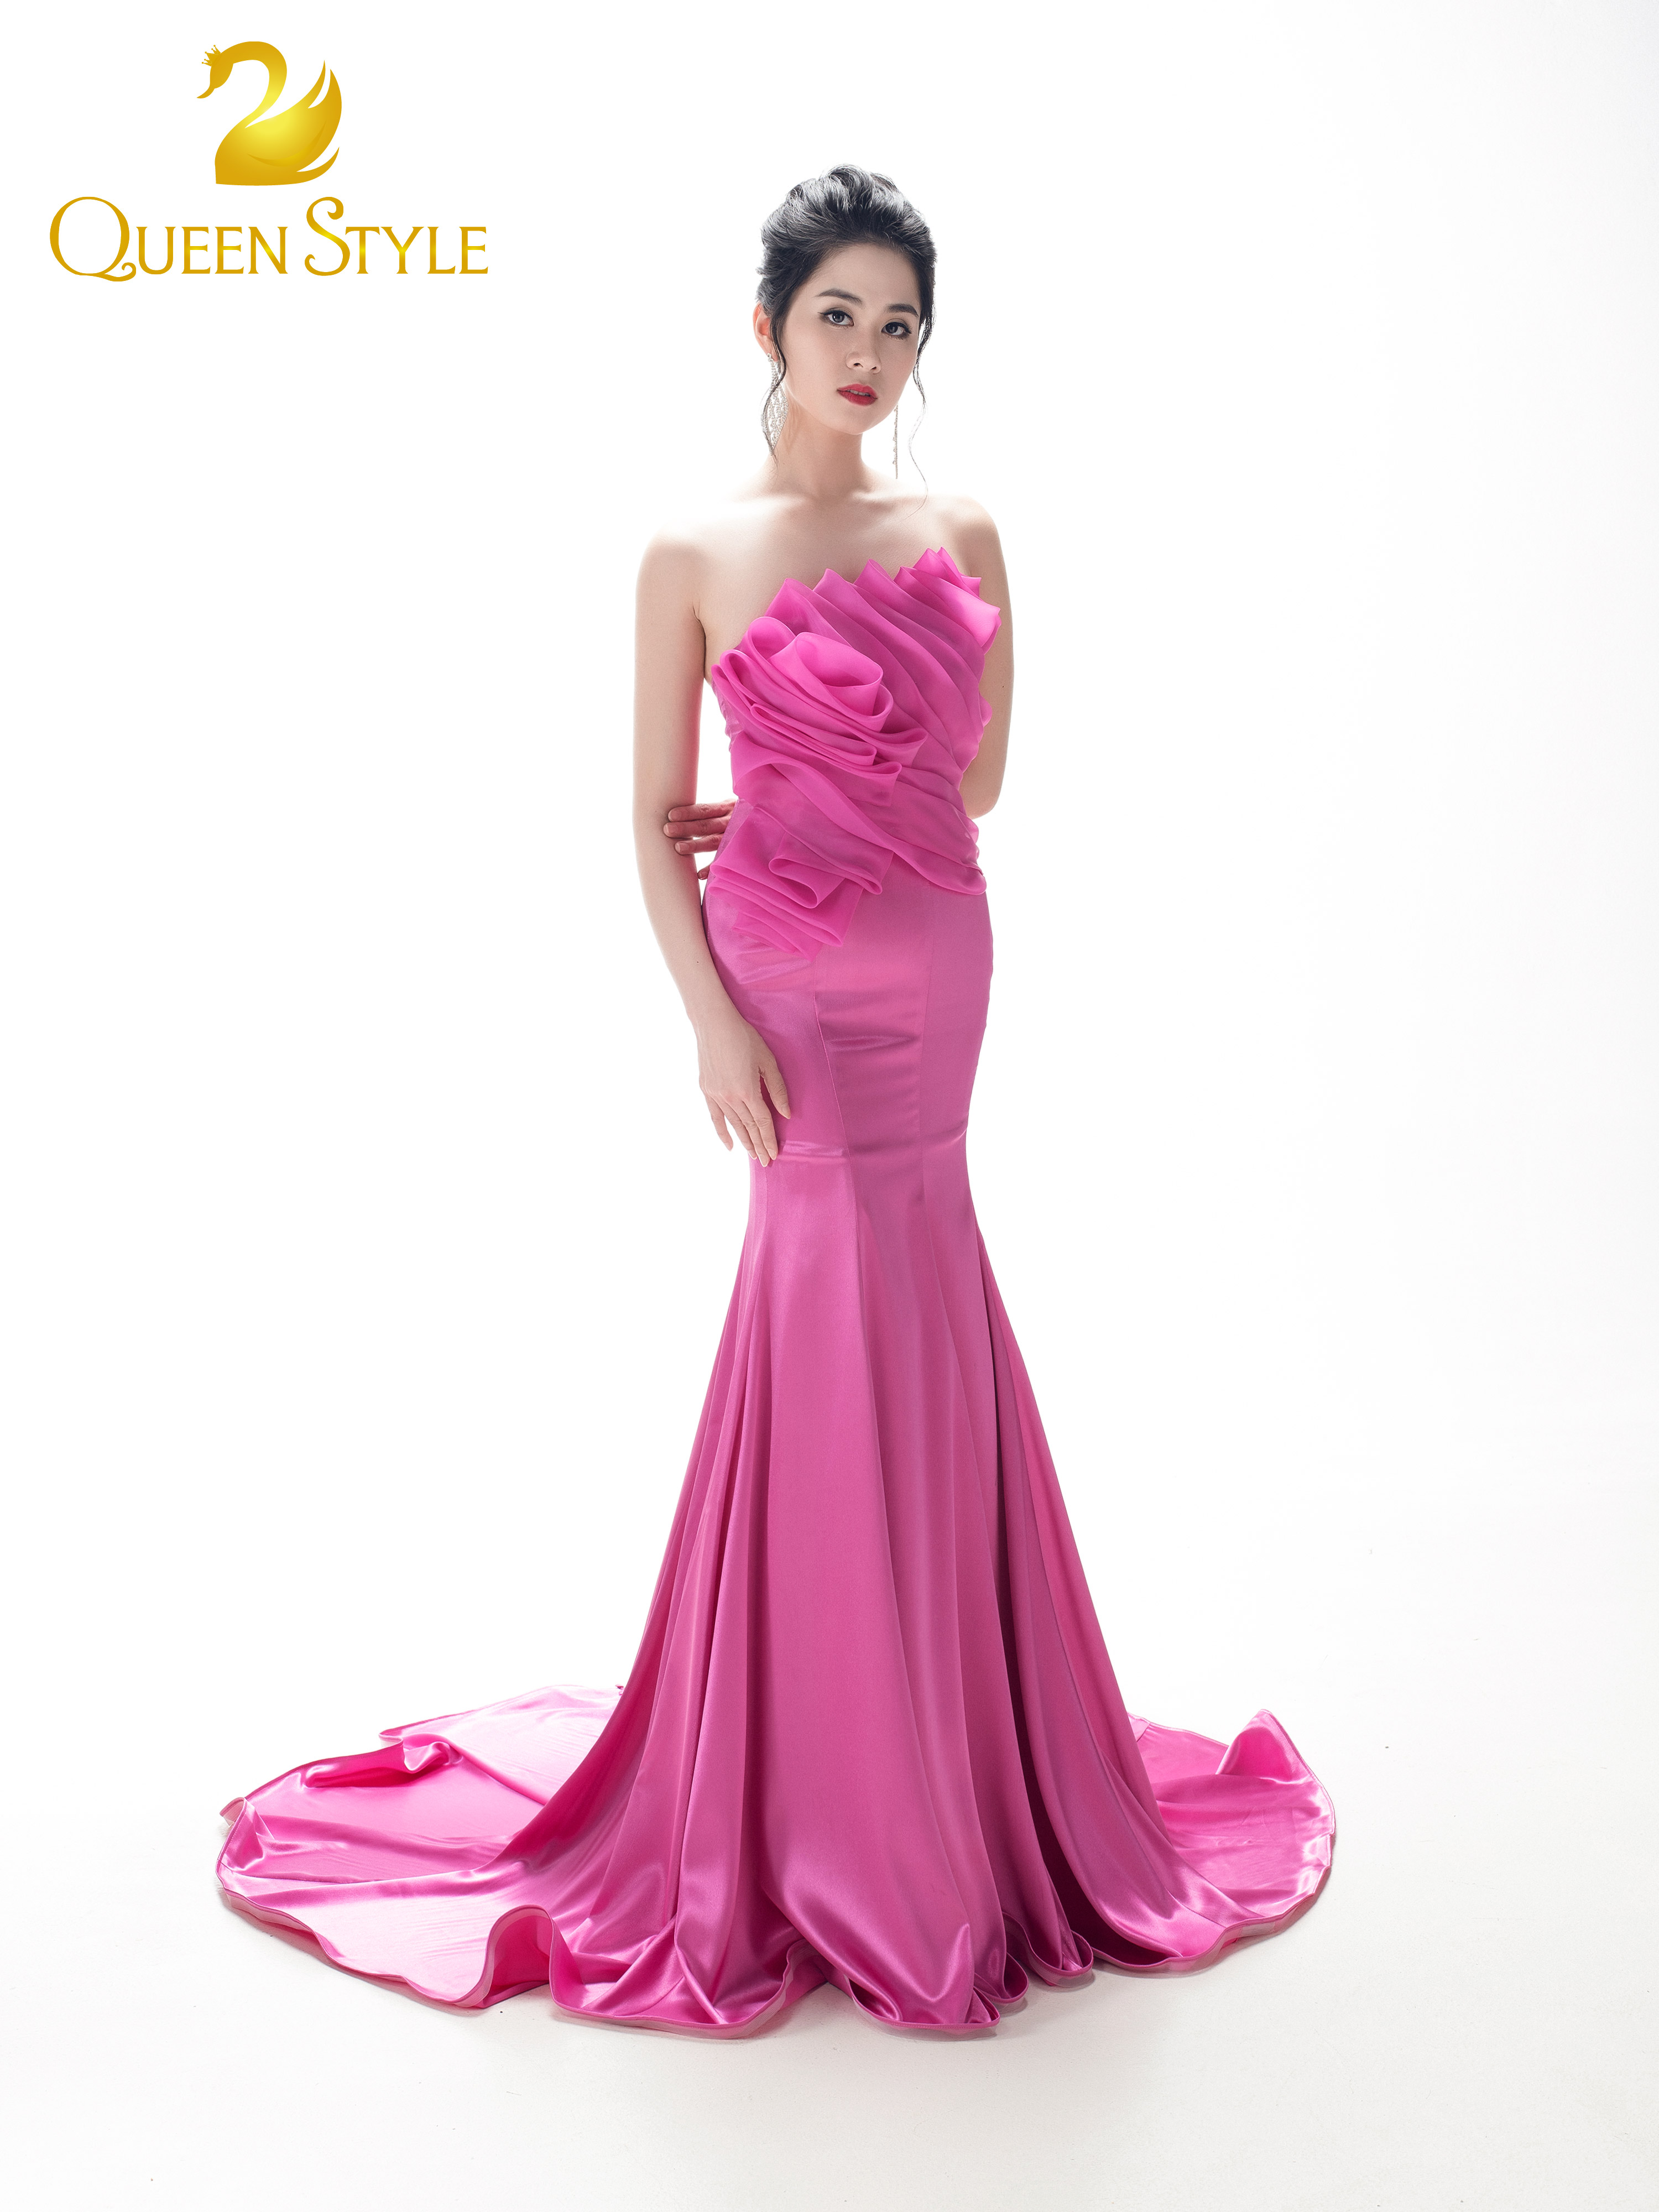 Queen Style - Thời trang Dạ hội cao cấp hàng đầu tại Hà Nội